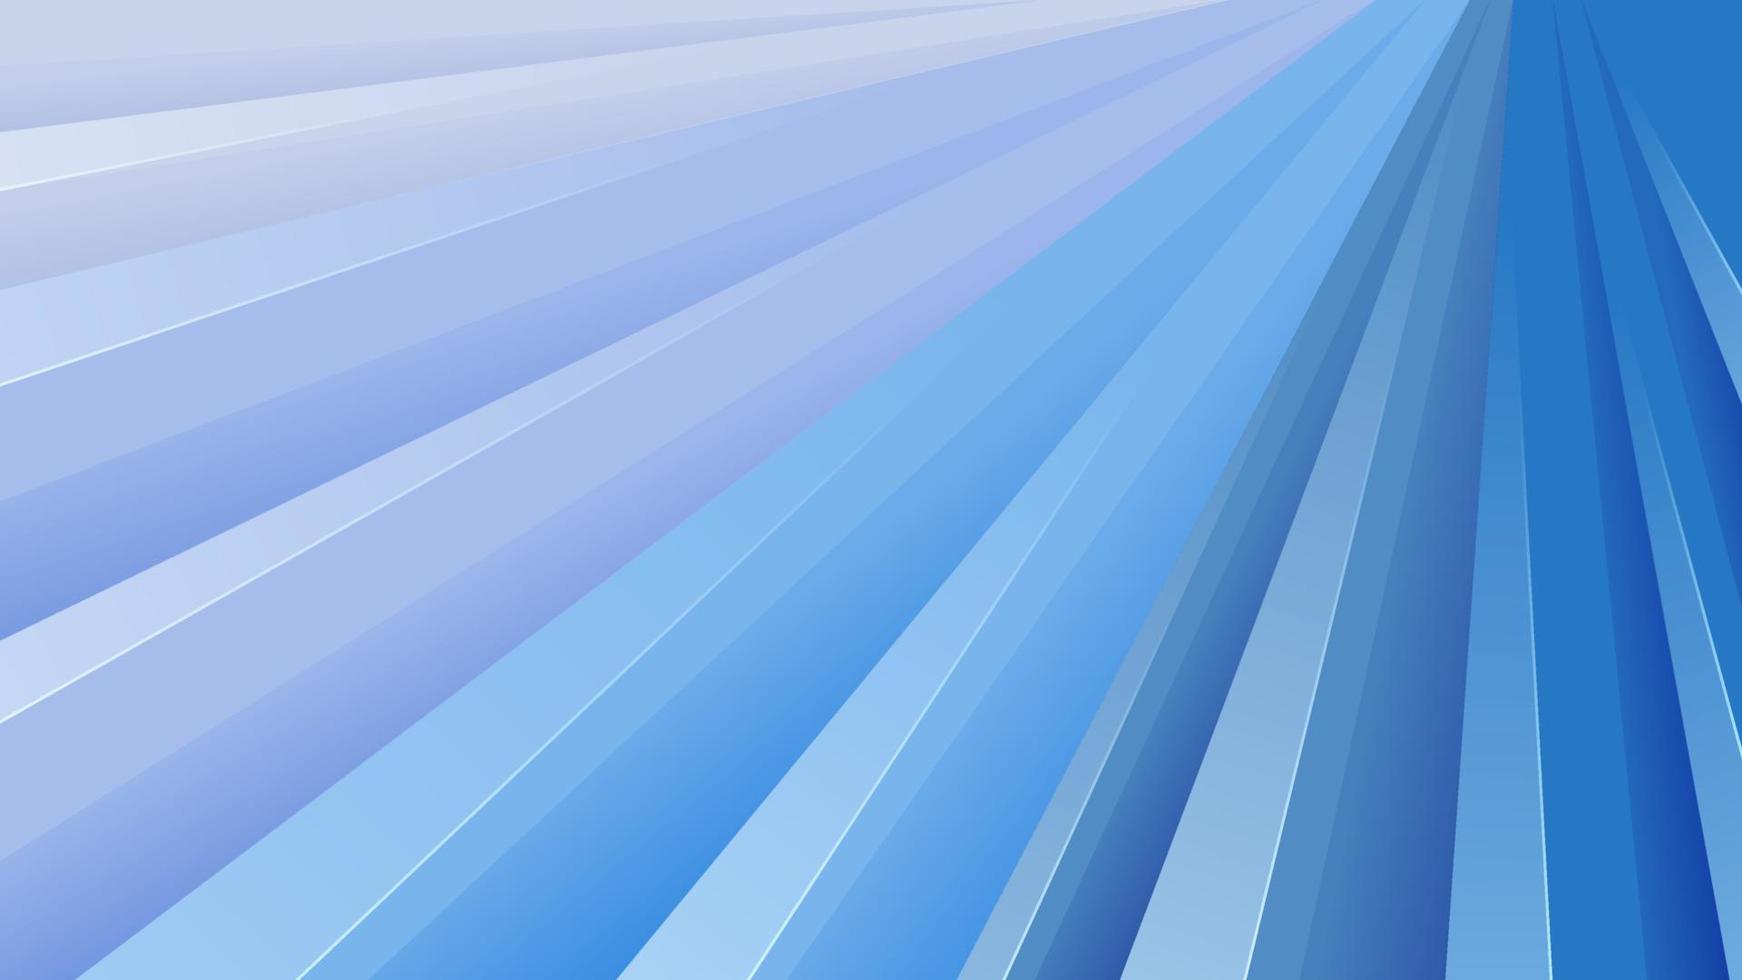 Vektor abstrakter Hintergrund mit weichen Farbverlauf und dynamischen Schatten im Hintergrund. Vektorhintergrund für Tapeten. Folge 10